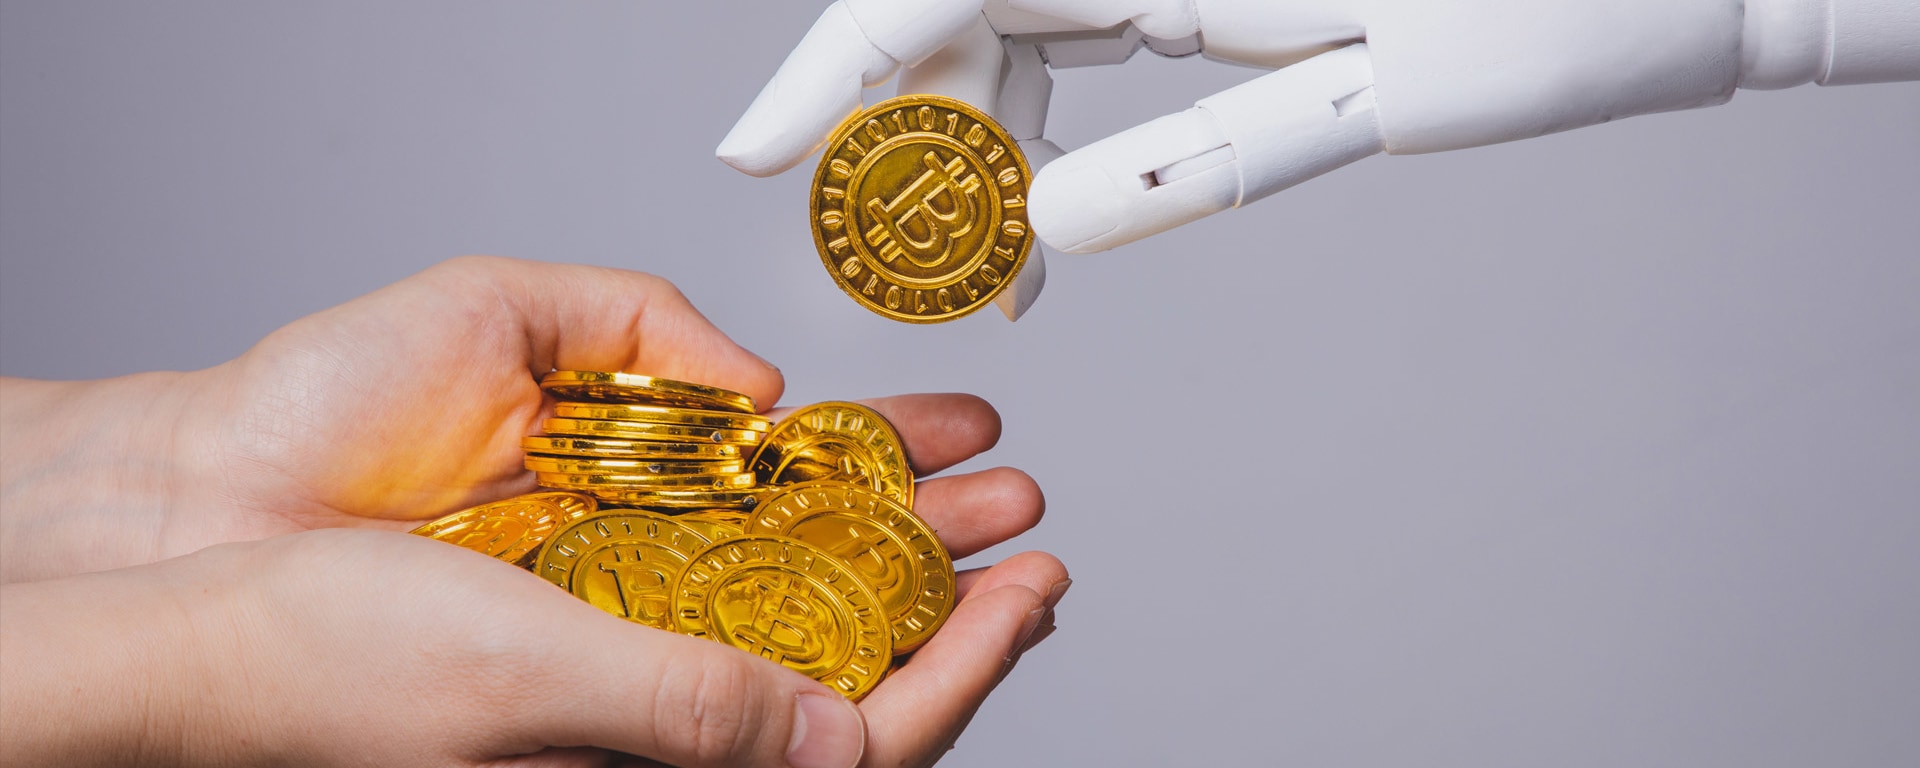 Eine Roboterhand legt Bitcoins in die Hände eines Menschen.